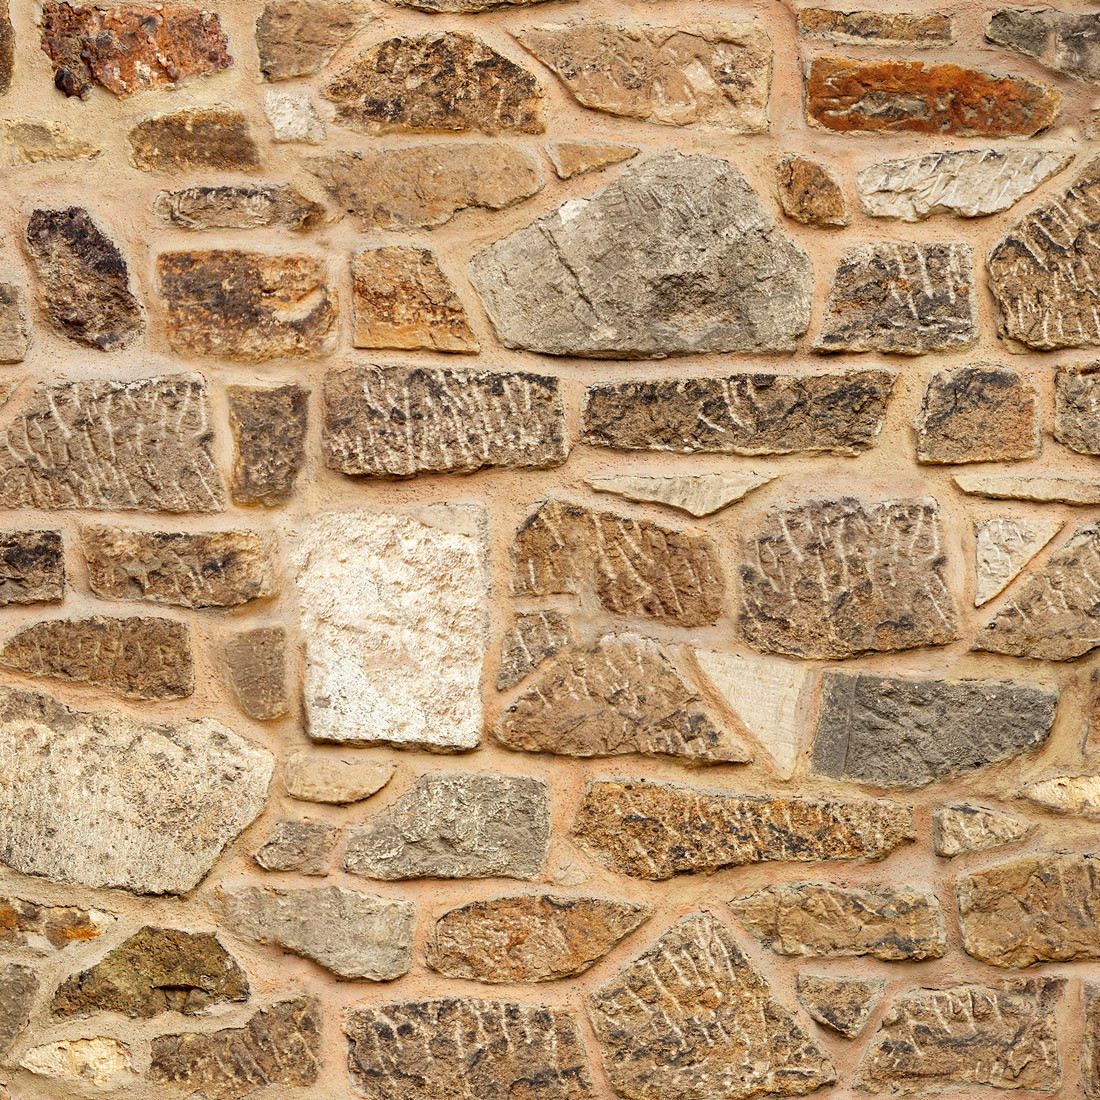 Papel de Parede Muro Canjiquinha (Pedras) - Loja Parede de Papel